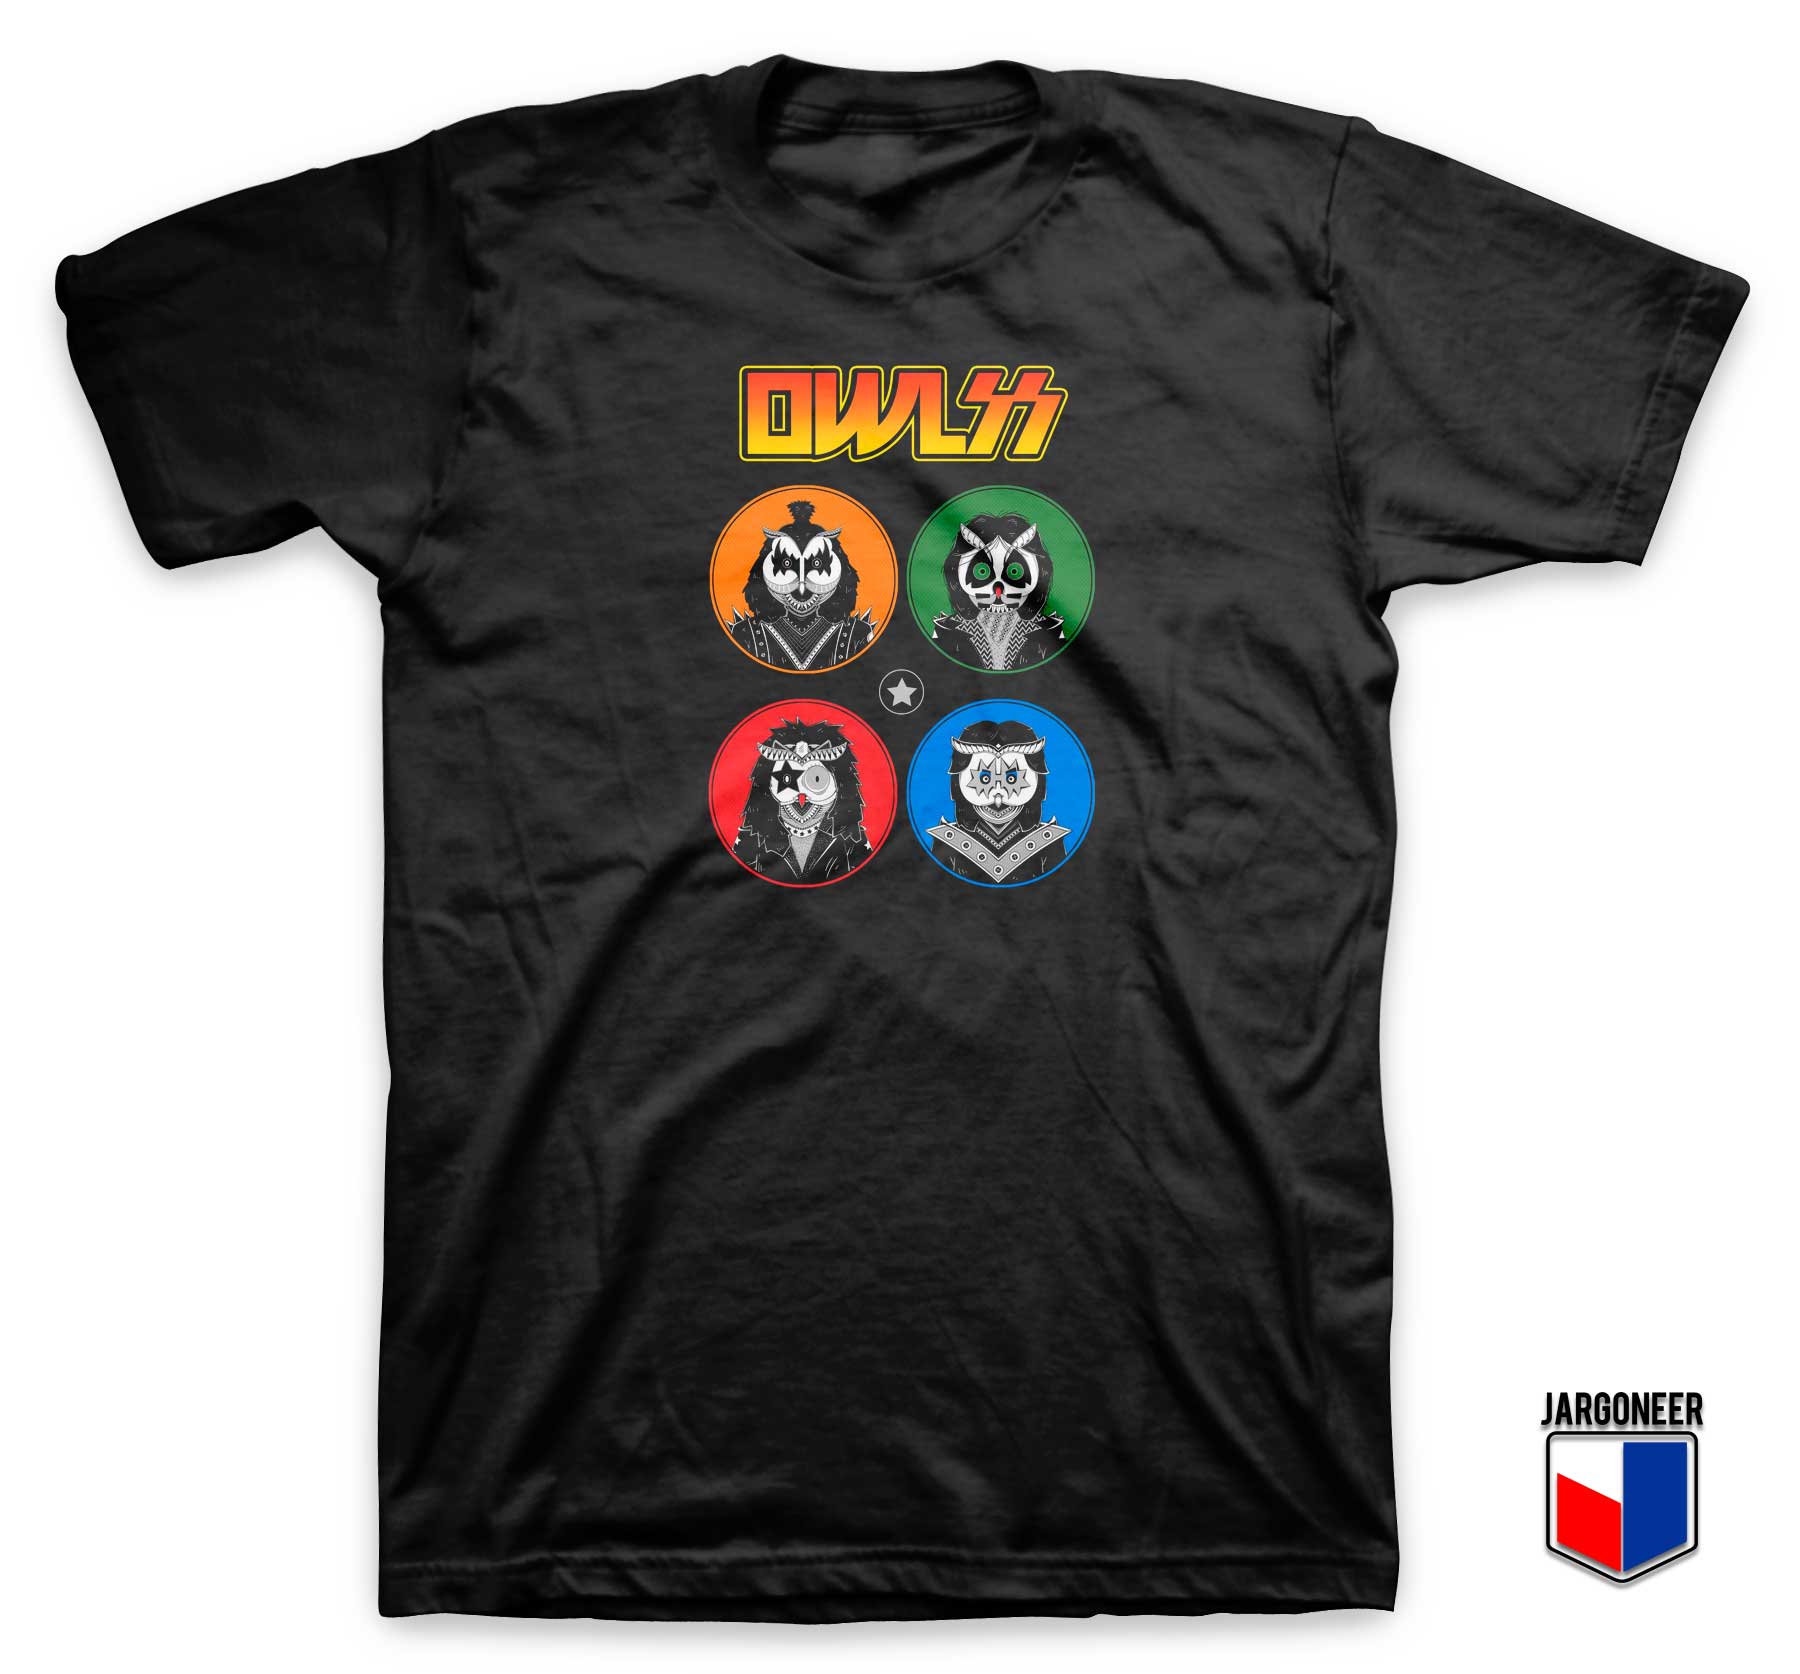 Owl Kiss Parody T Shirt - Shop Unique Graphic Cool Shirt Designs